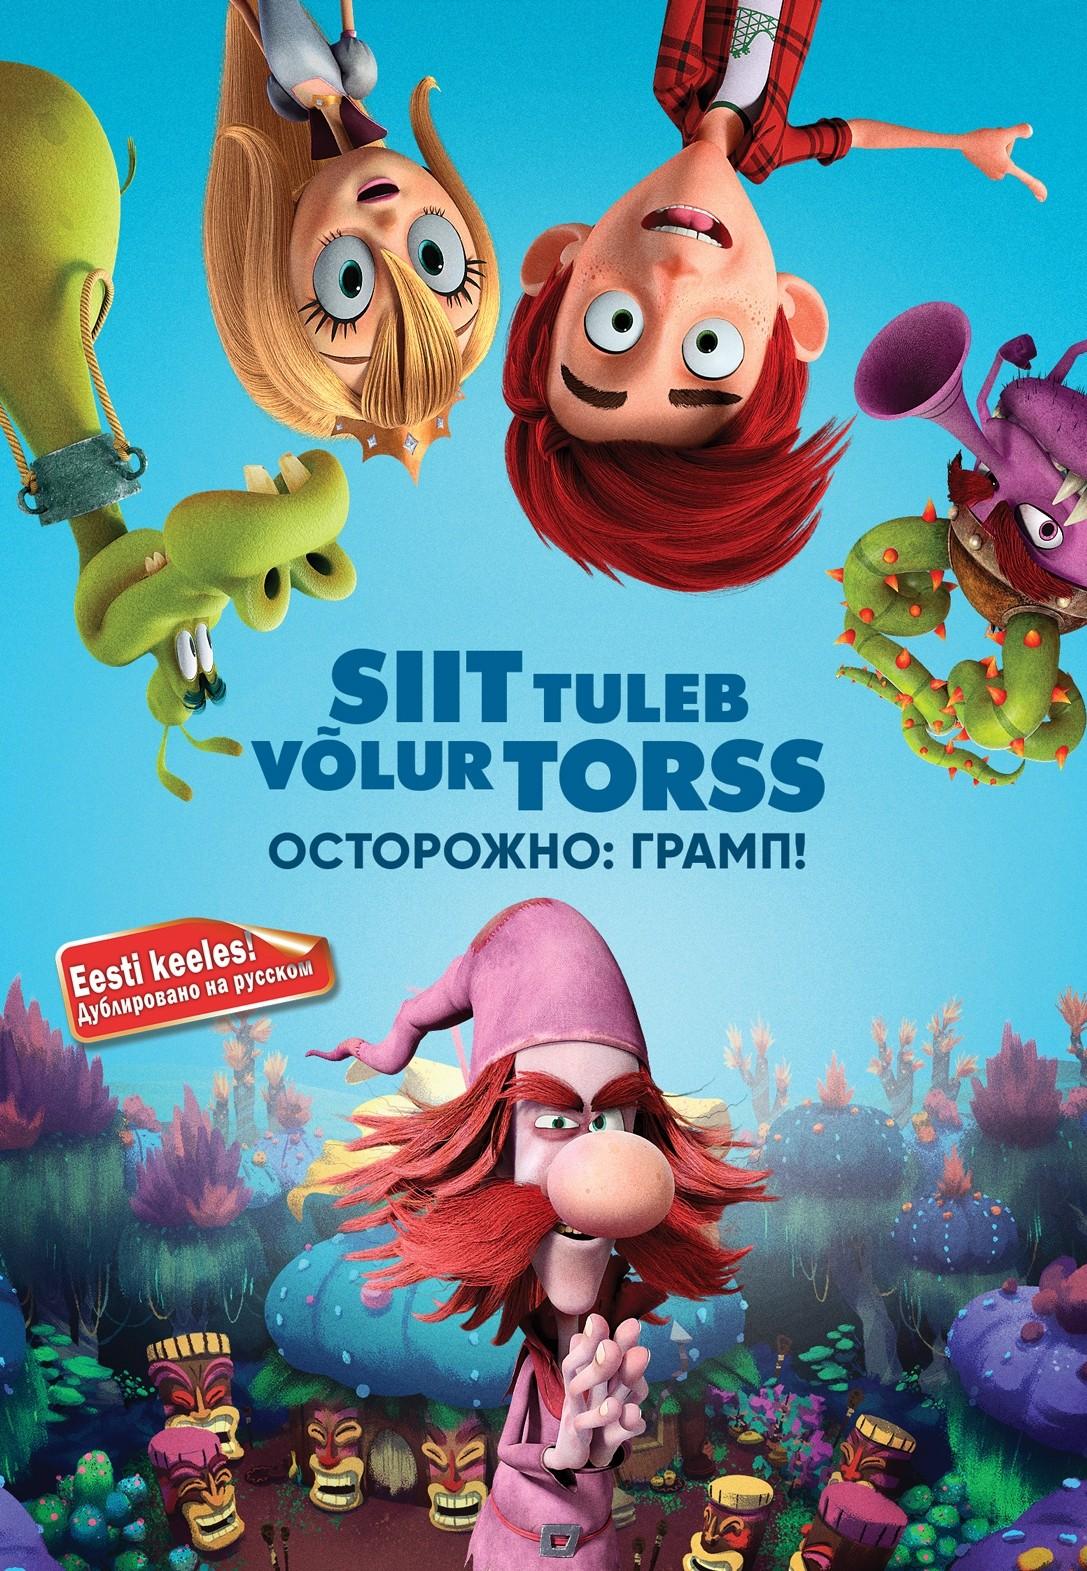 SIIT TULEB VÕLUR TORSS DVD